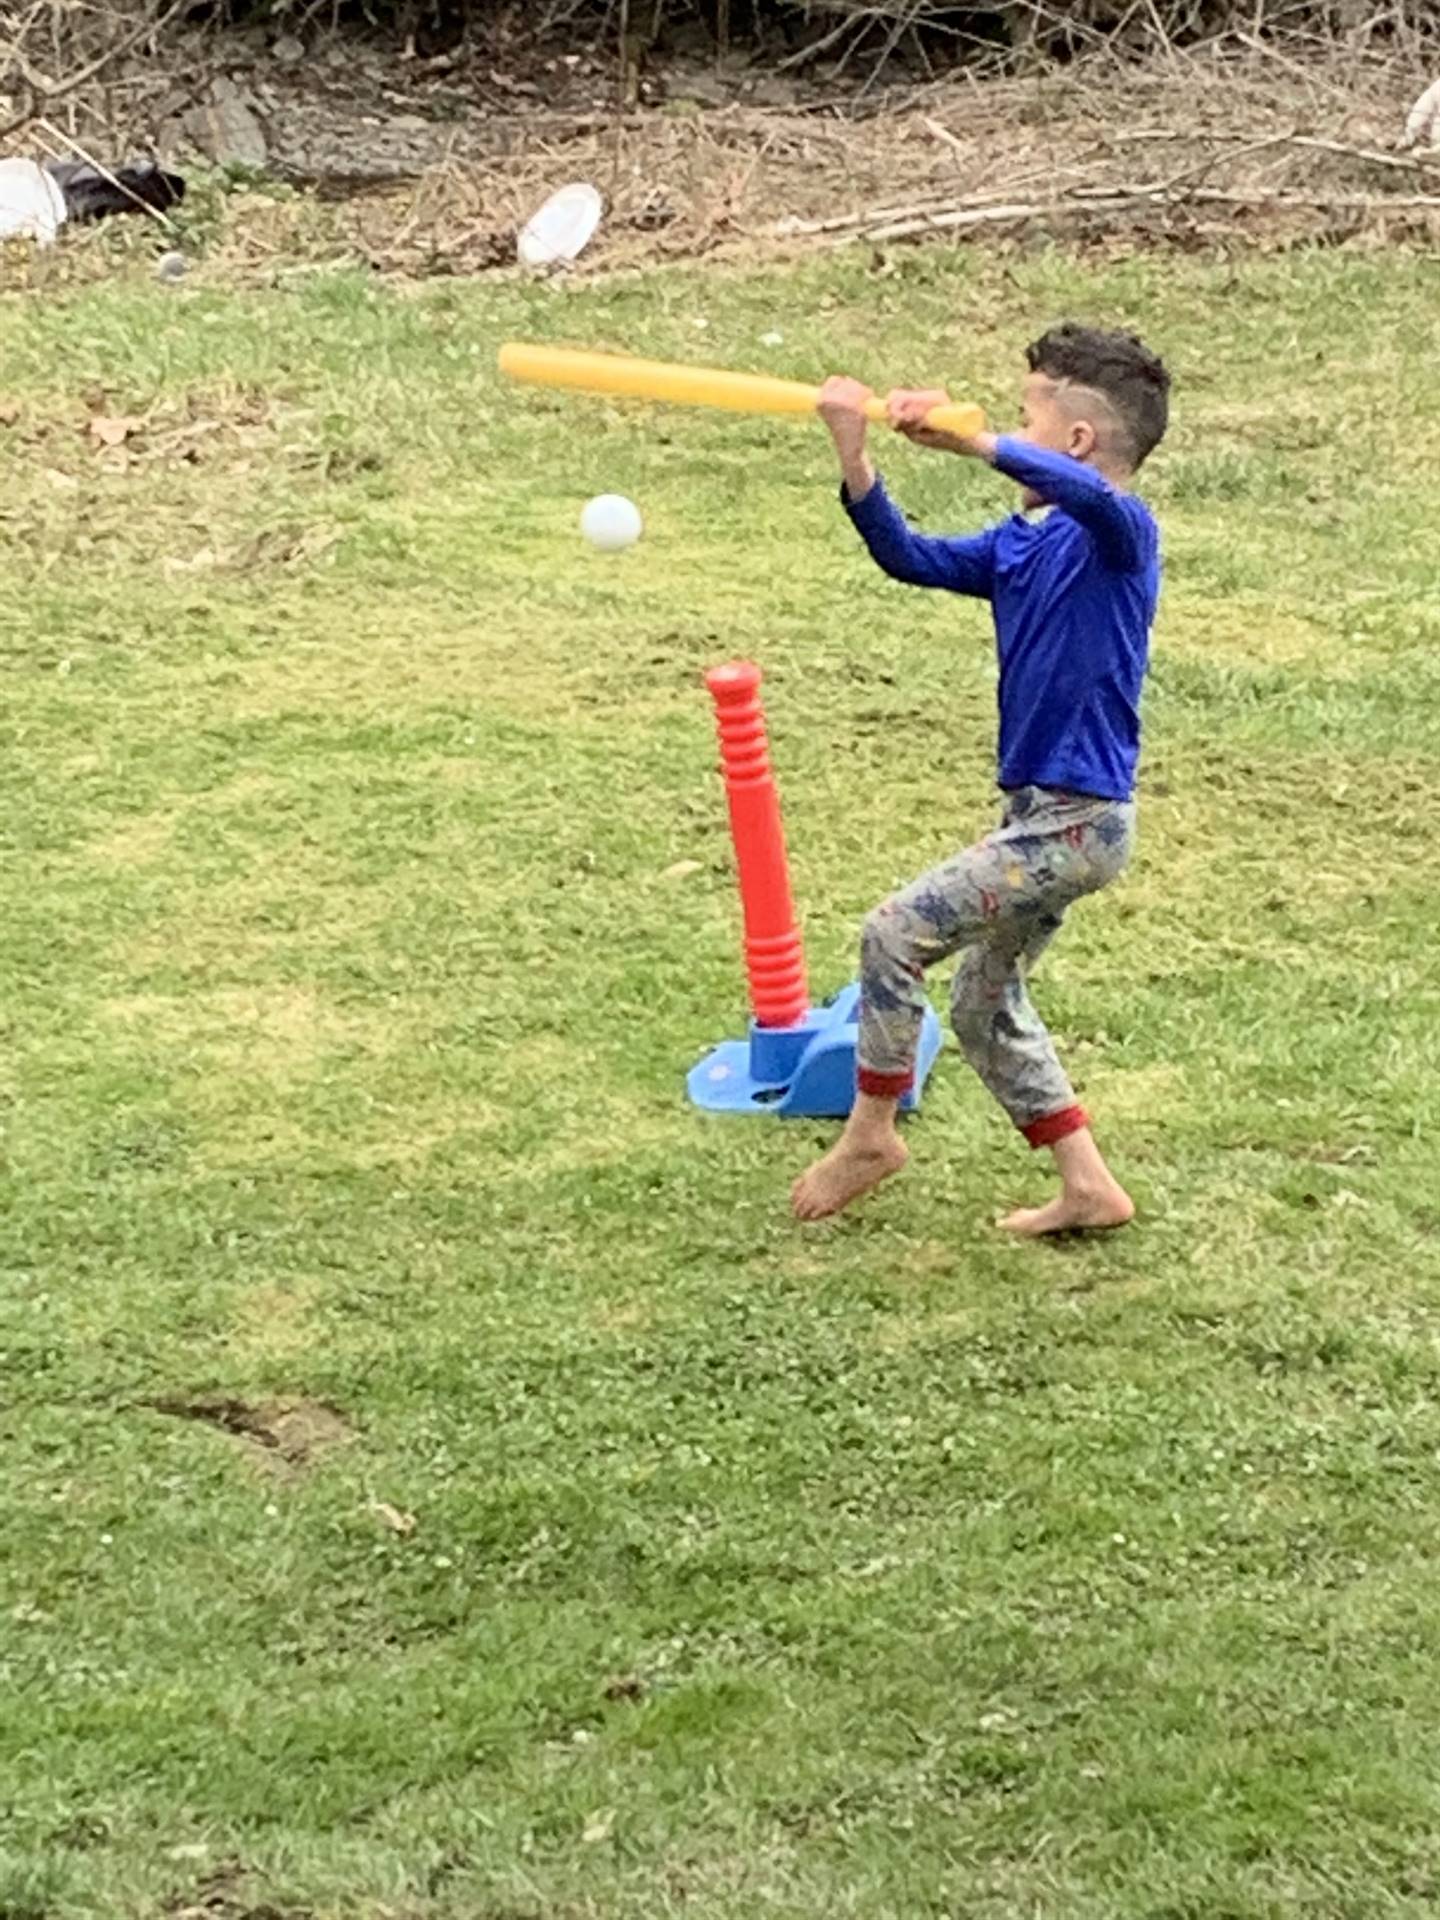 A boy bats a ball!